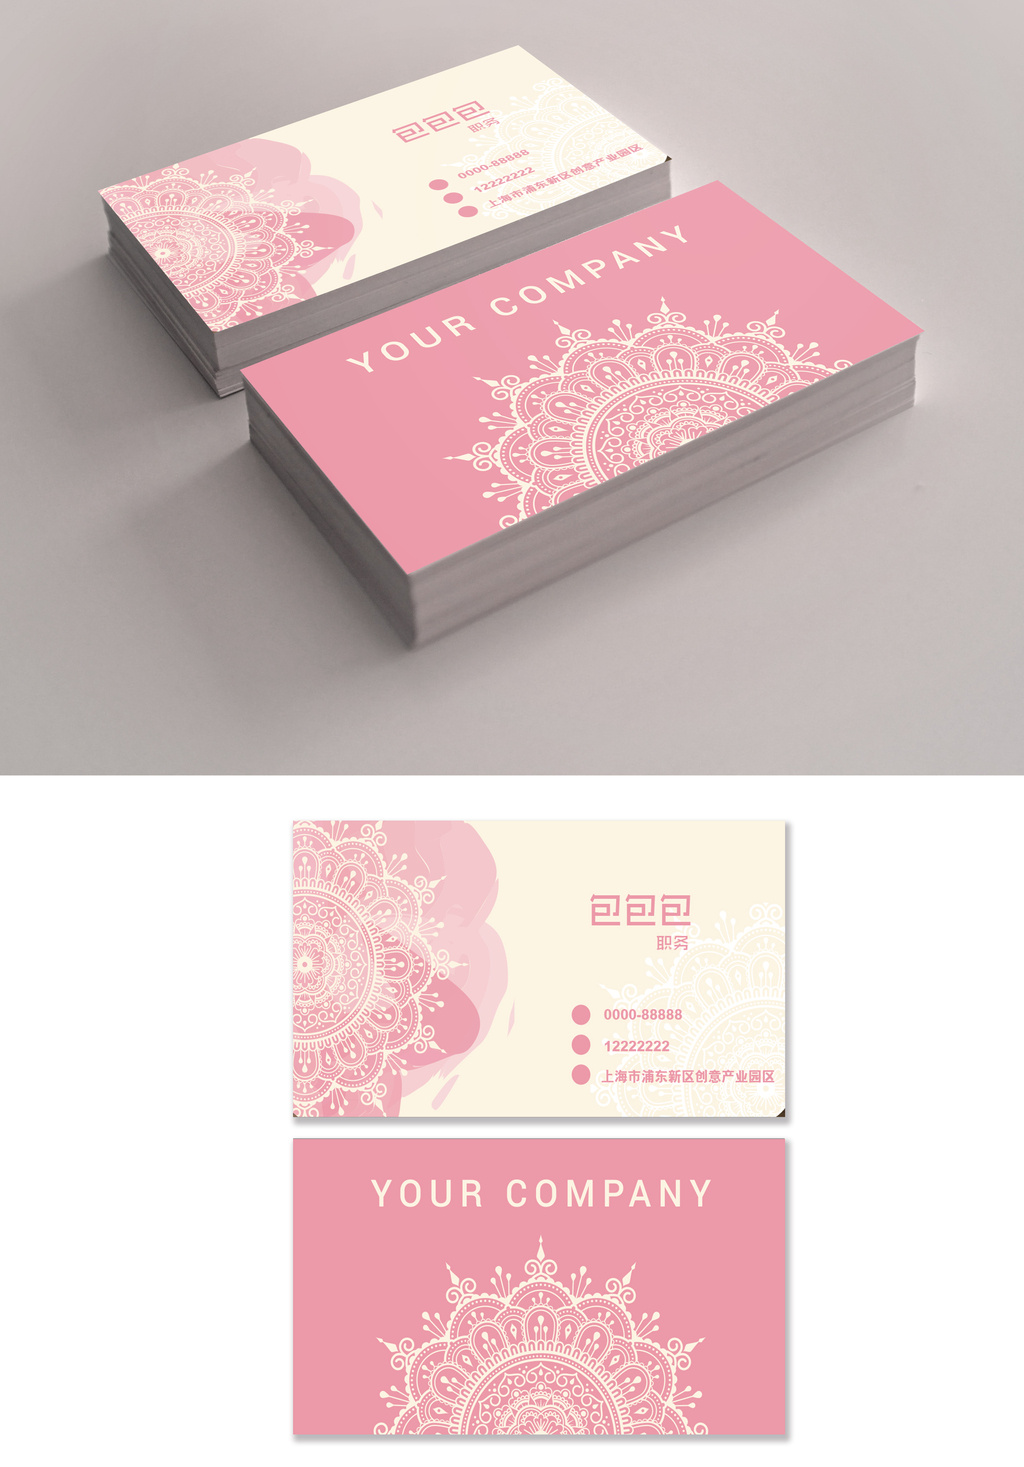 优雅粉色名片模板免费下载 _广告设计图片设计素材